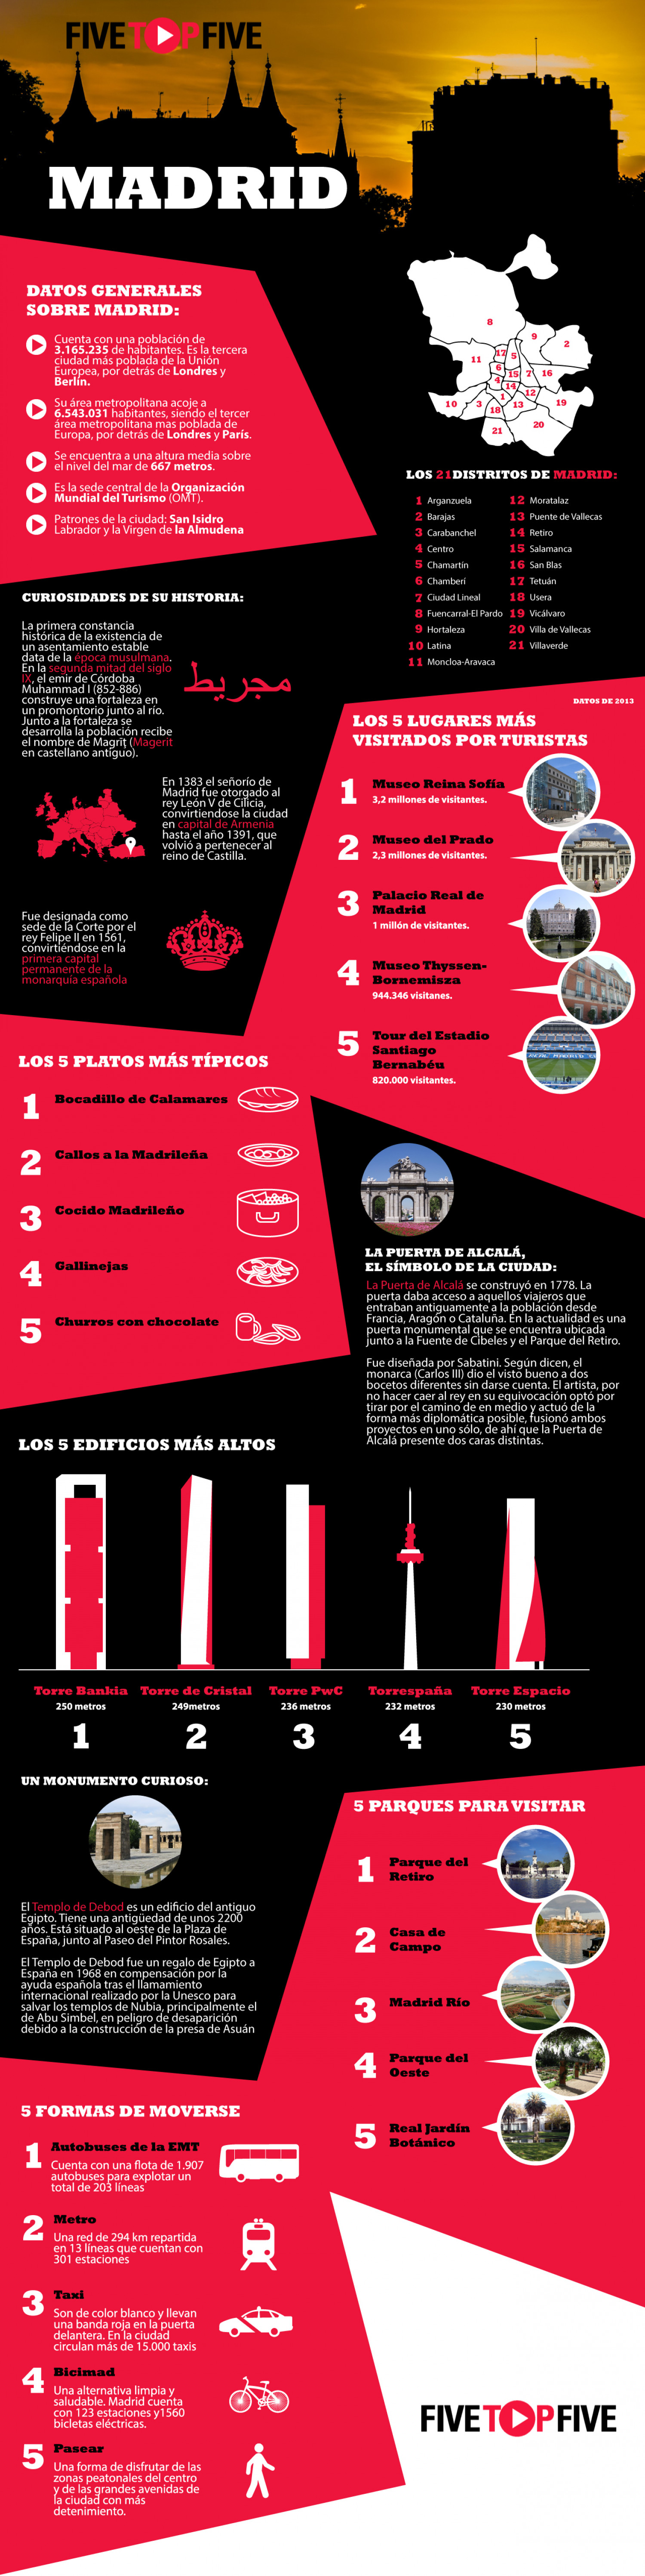 Curiosidades sobre Madrid Infographic